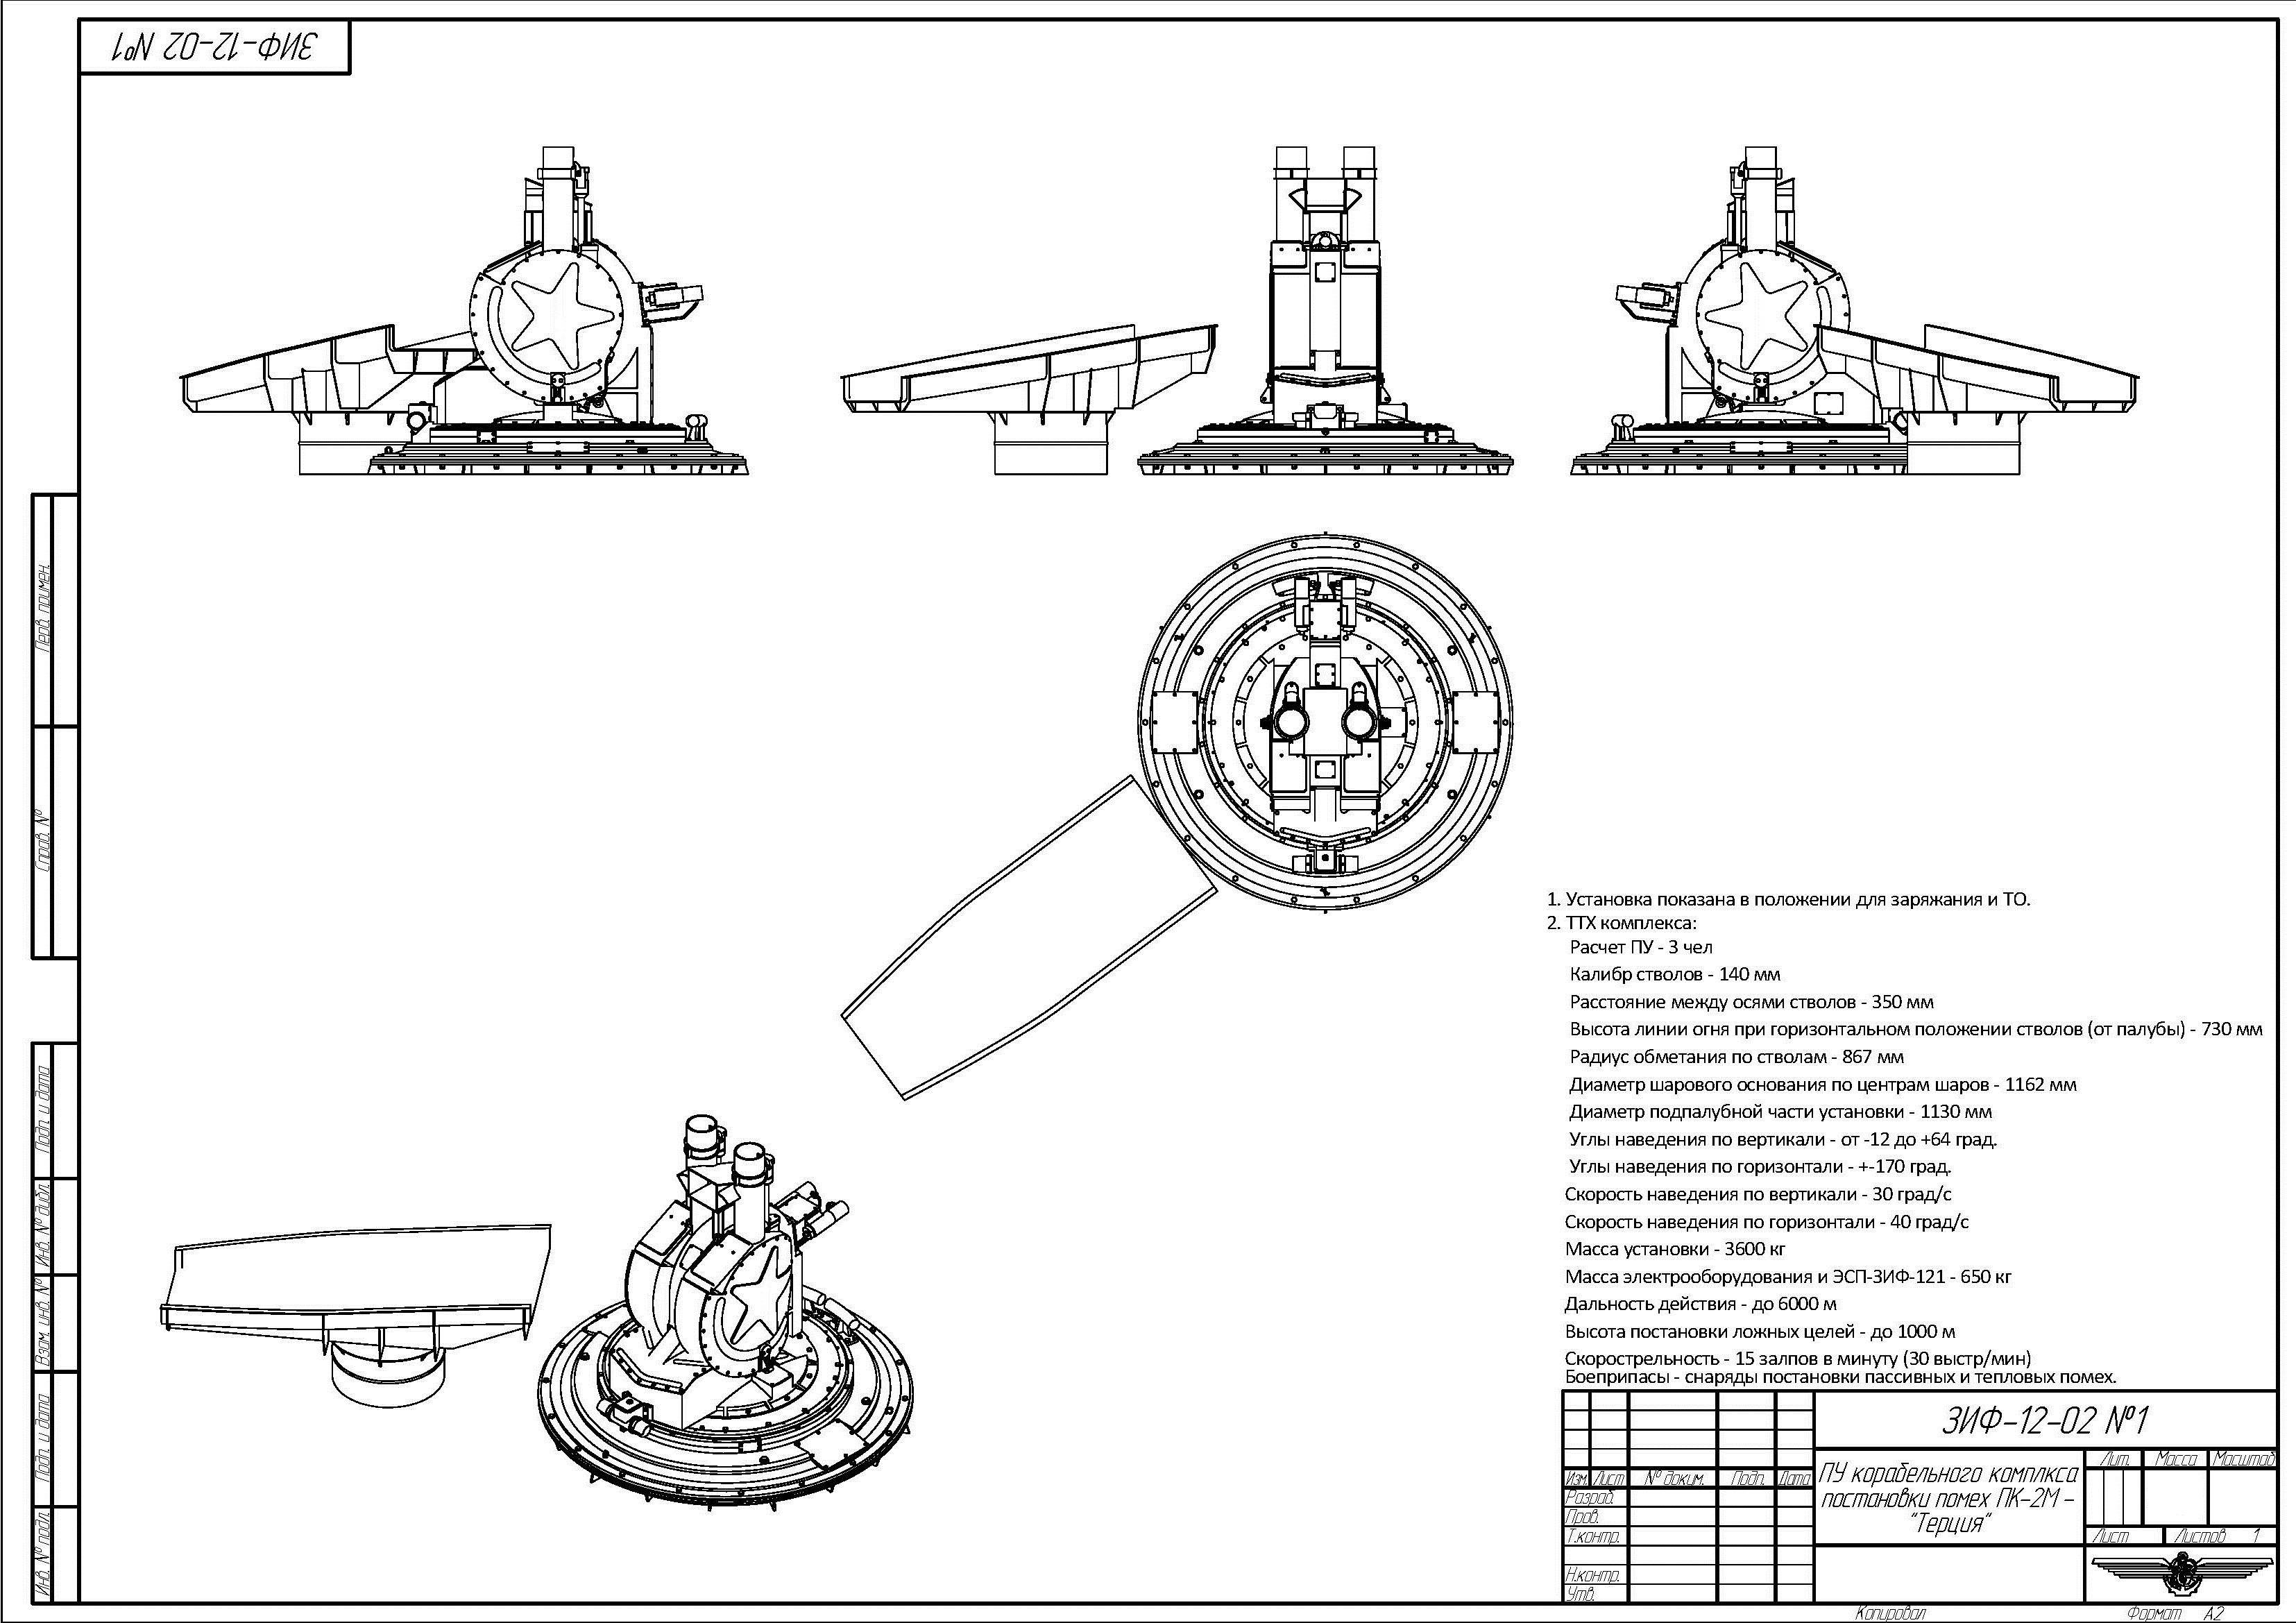 «убийцы авианосцев» - боевые корабли проекта 1234